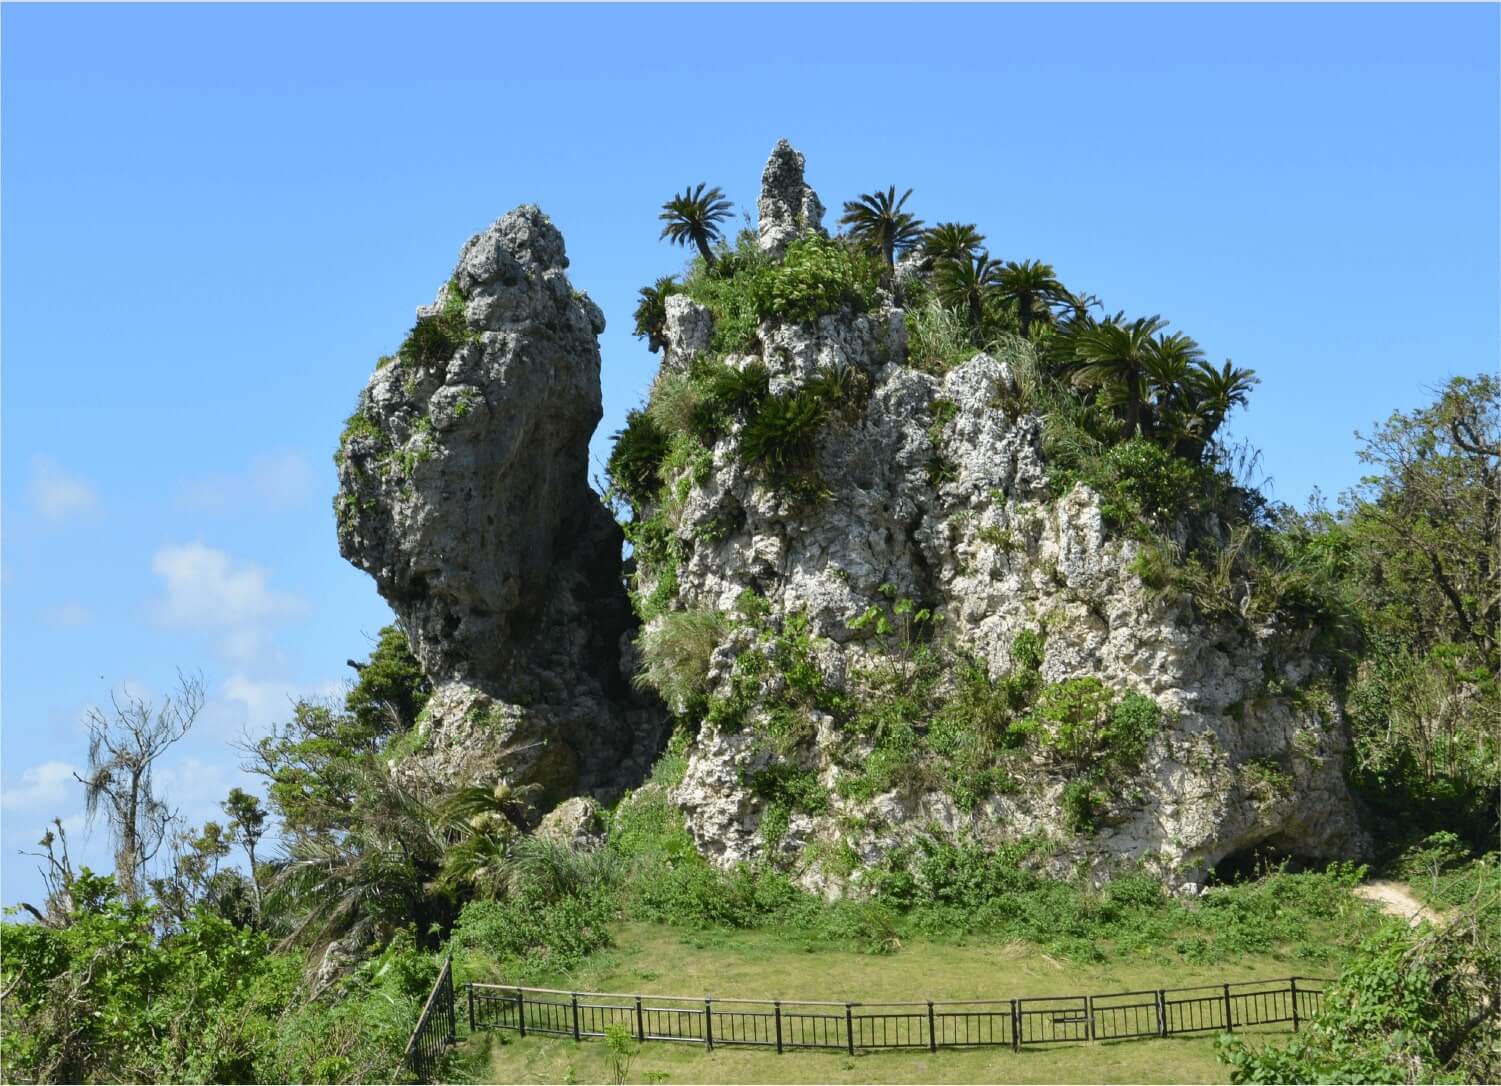 페리 기립바위（마을 지정 유적）